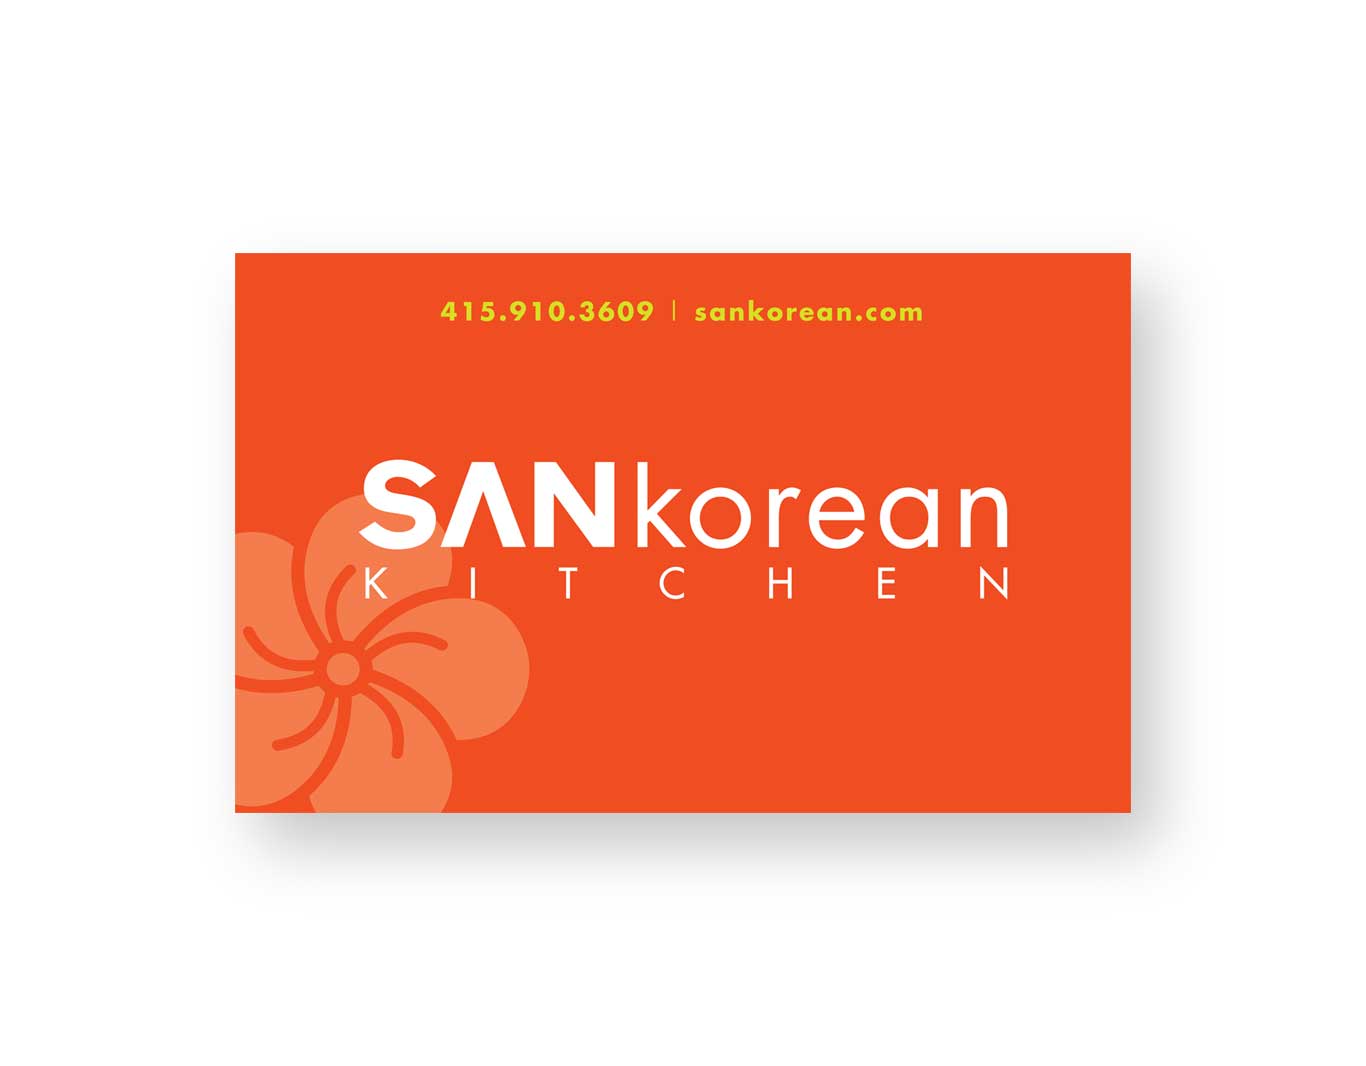 Campaign- SANkorean Kitchen